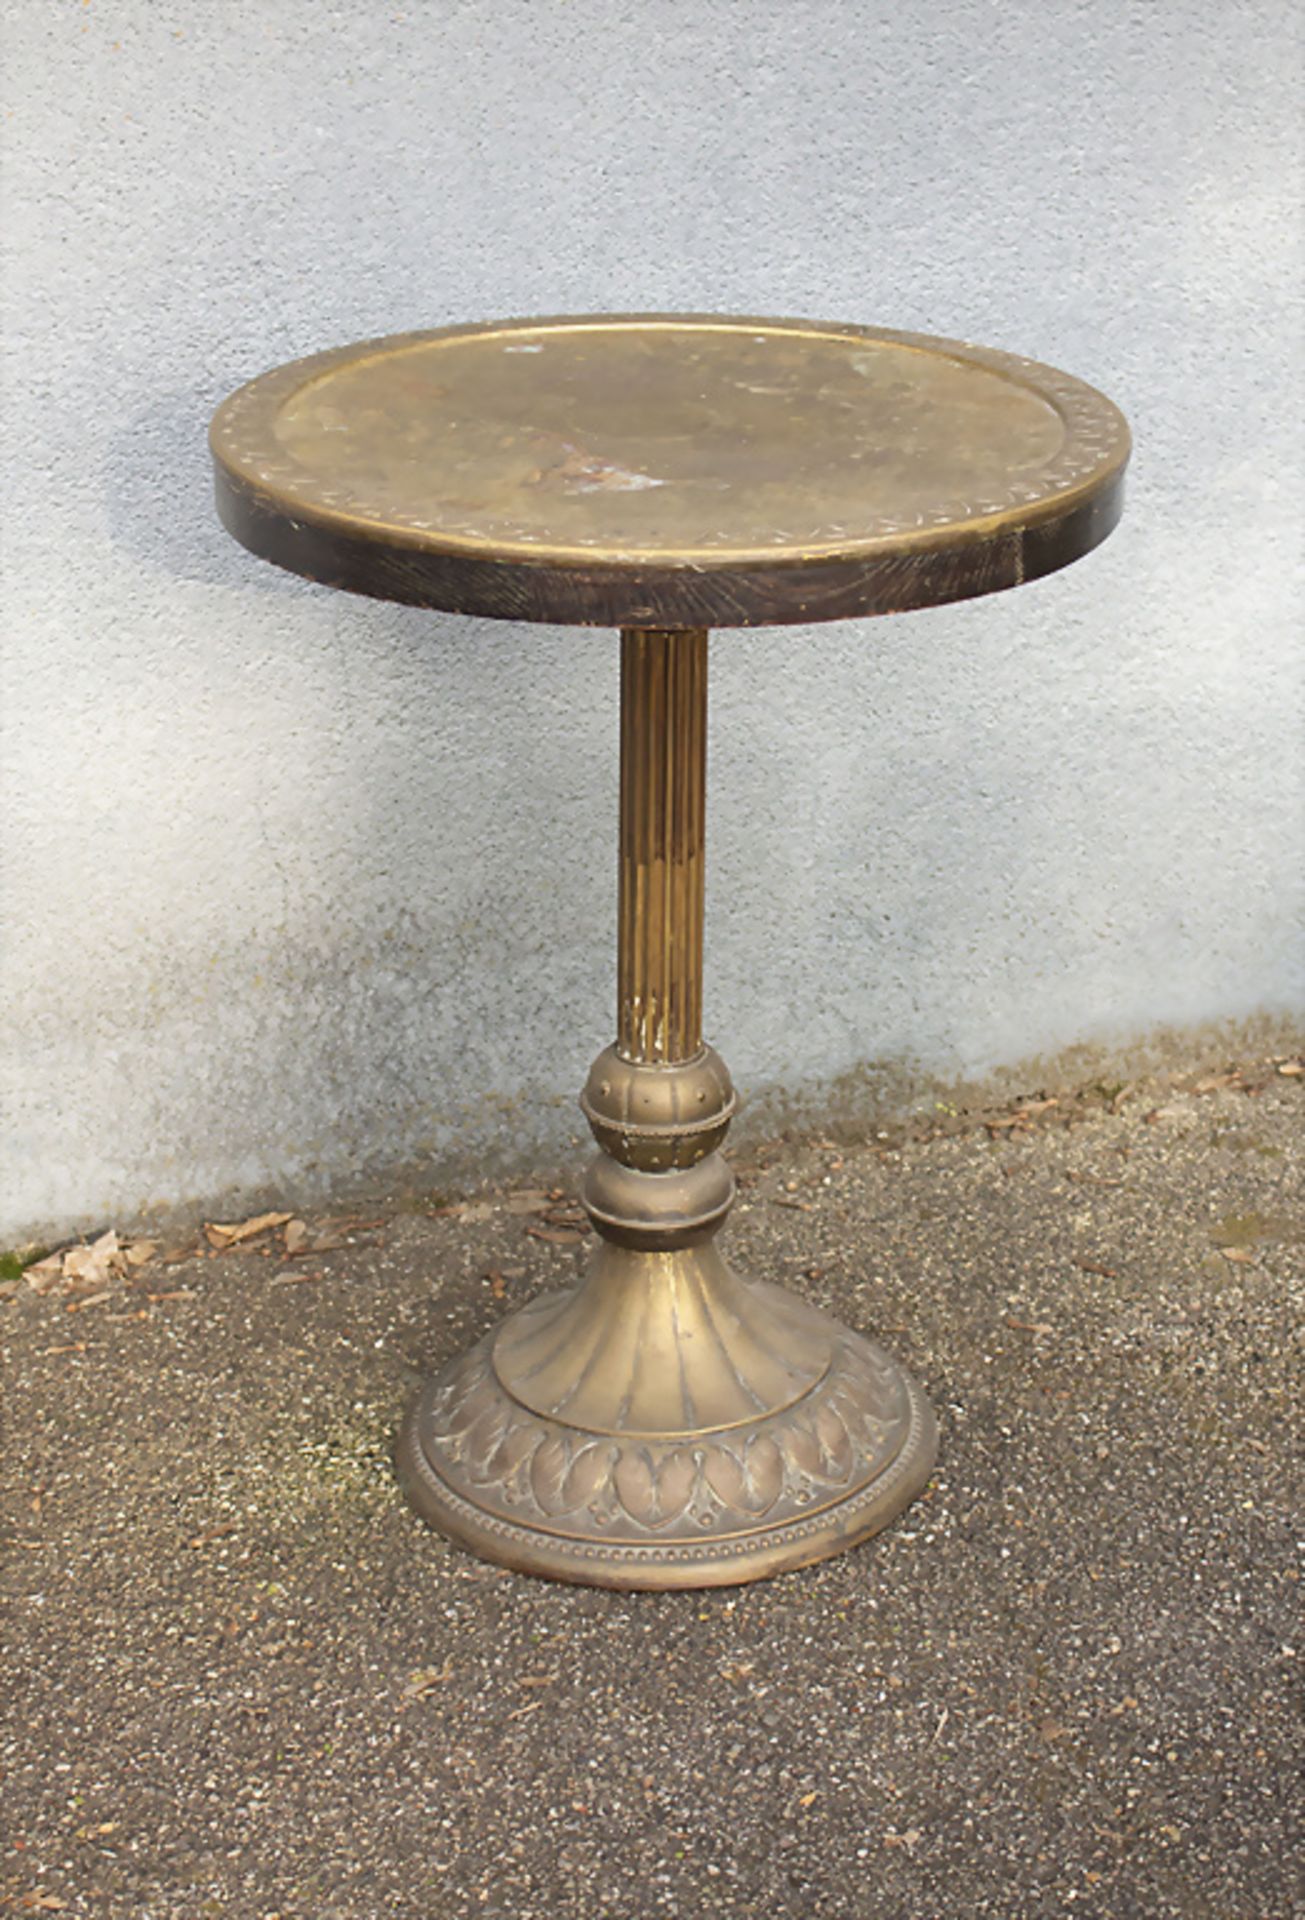 Runder Jugendstil Tisch / A round Art Nouveau table, deutsch, um 1900